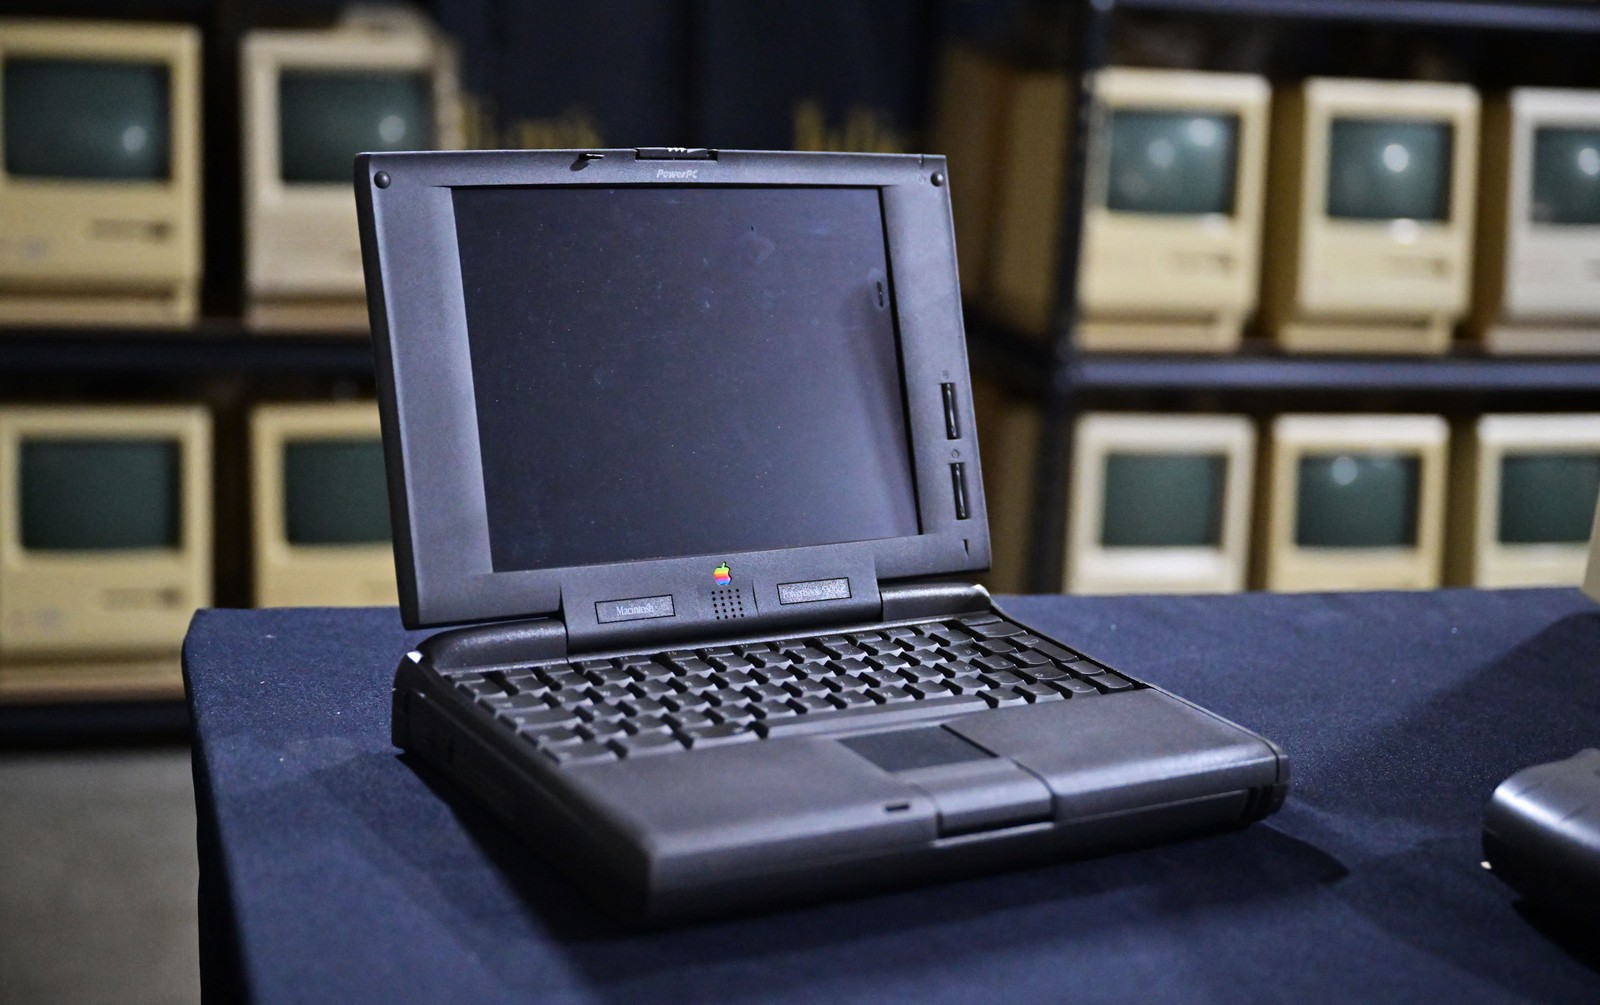 Apple Computer Powerbook 5300ce foi um notebook lançado pela empresa nos anos 90 — Foto: Frederic J. BROWN / AFP